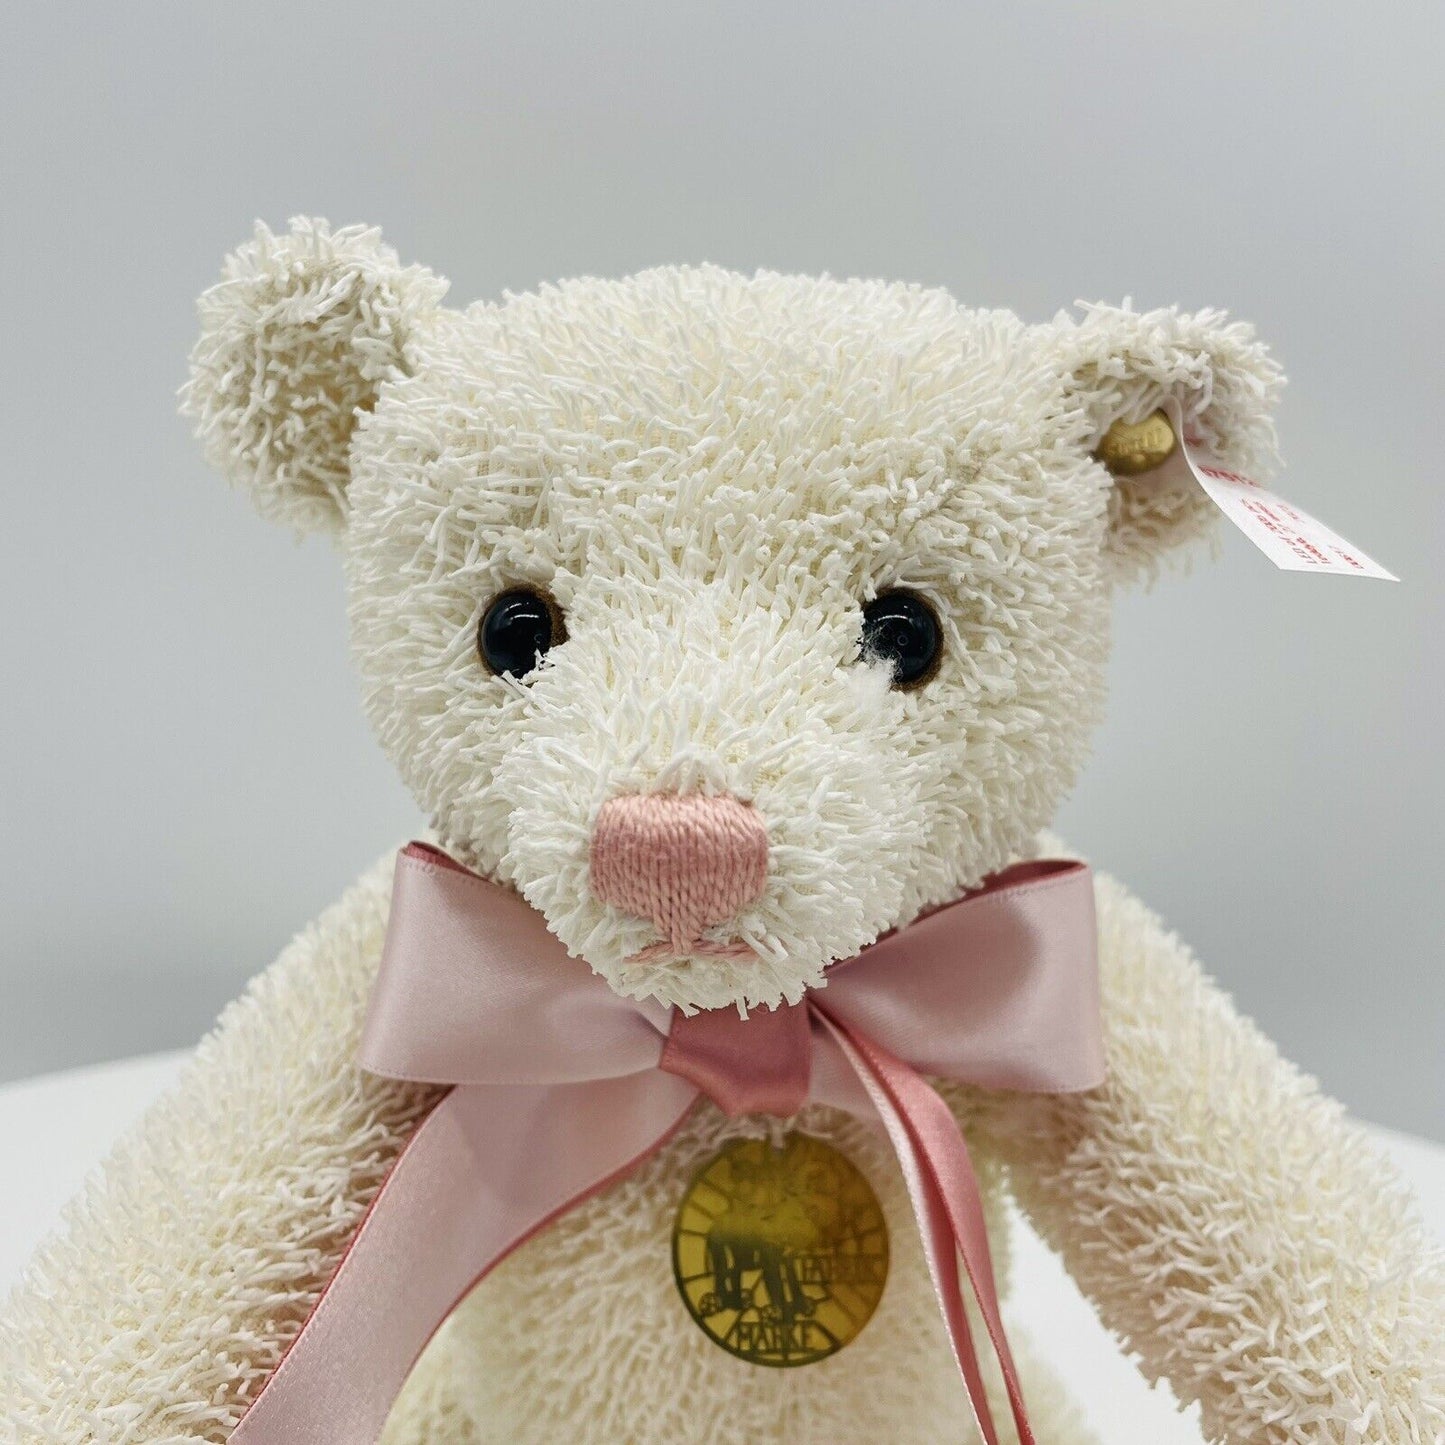 Steiff Teddybär Museumsbär 2023 675126 limitiert 2005 aus 2023 27cm